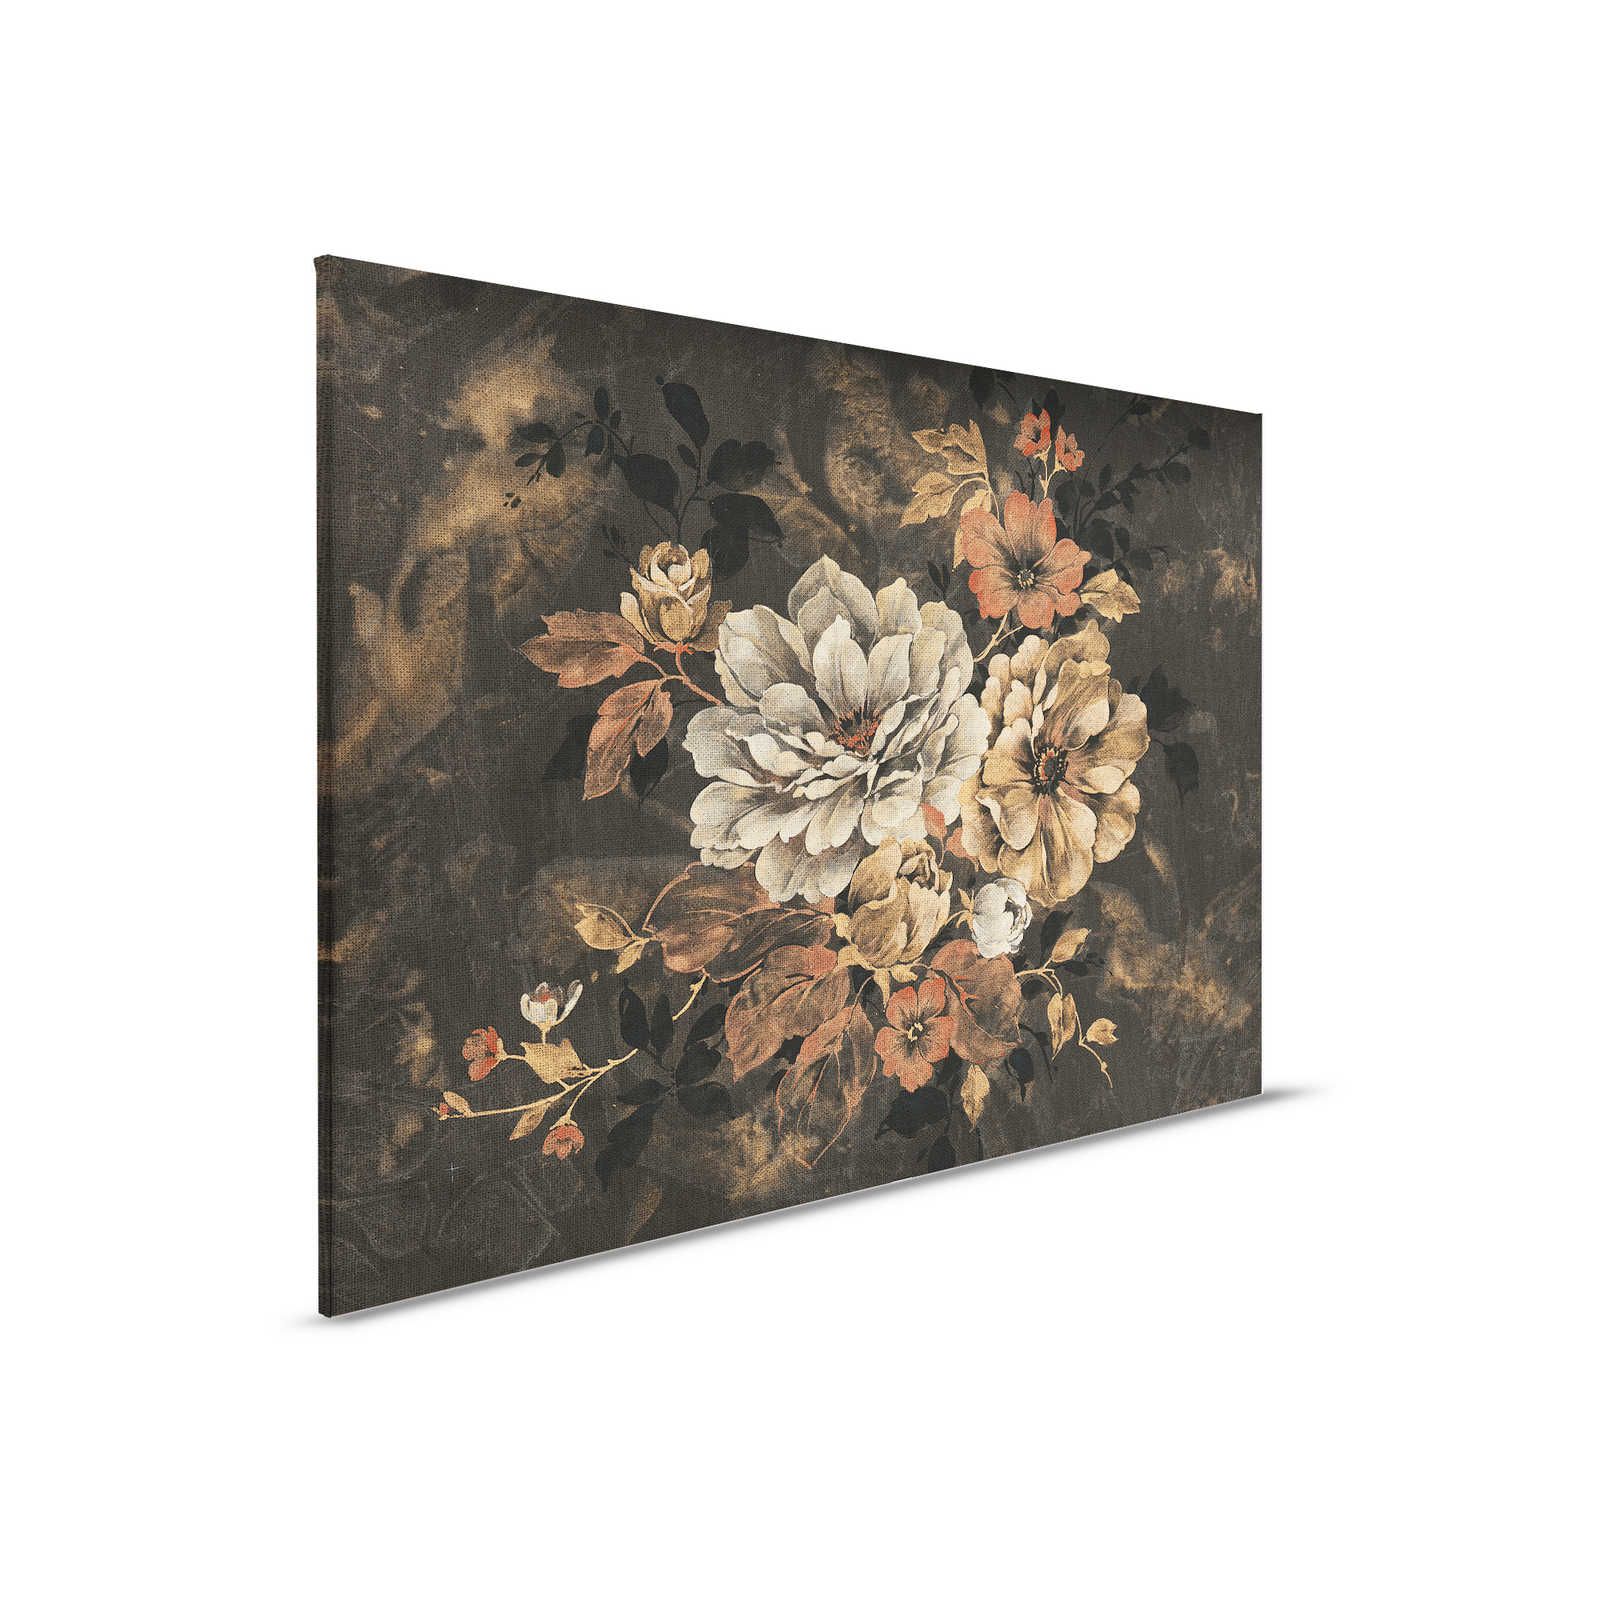 Cuadro en lienzo Diseño floral, pintura al óleo de aspecto vintage - 0,90 m x 0,60 m
